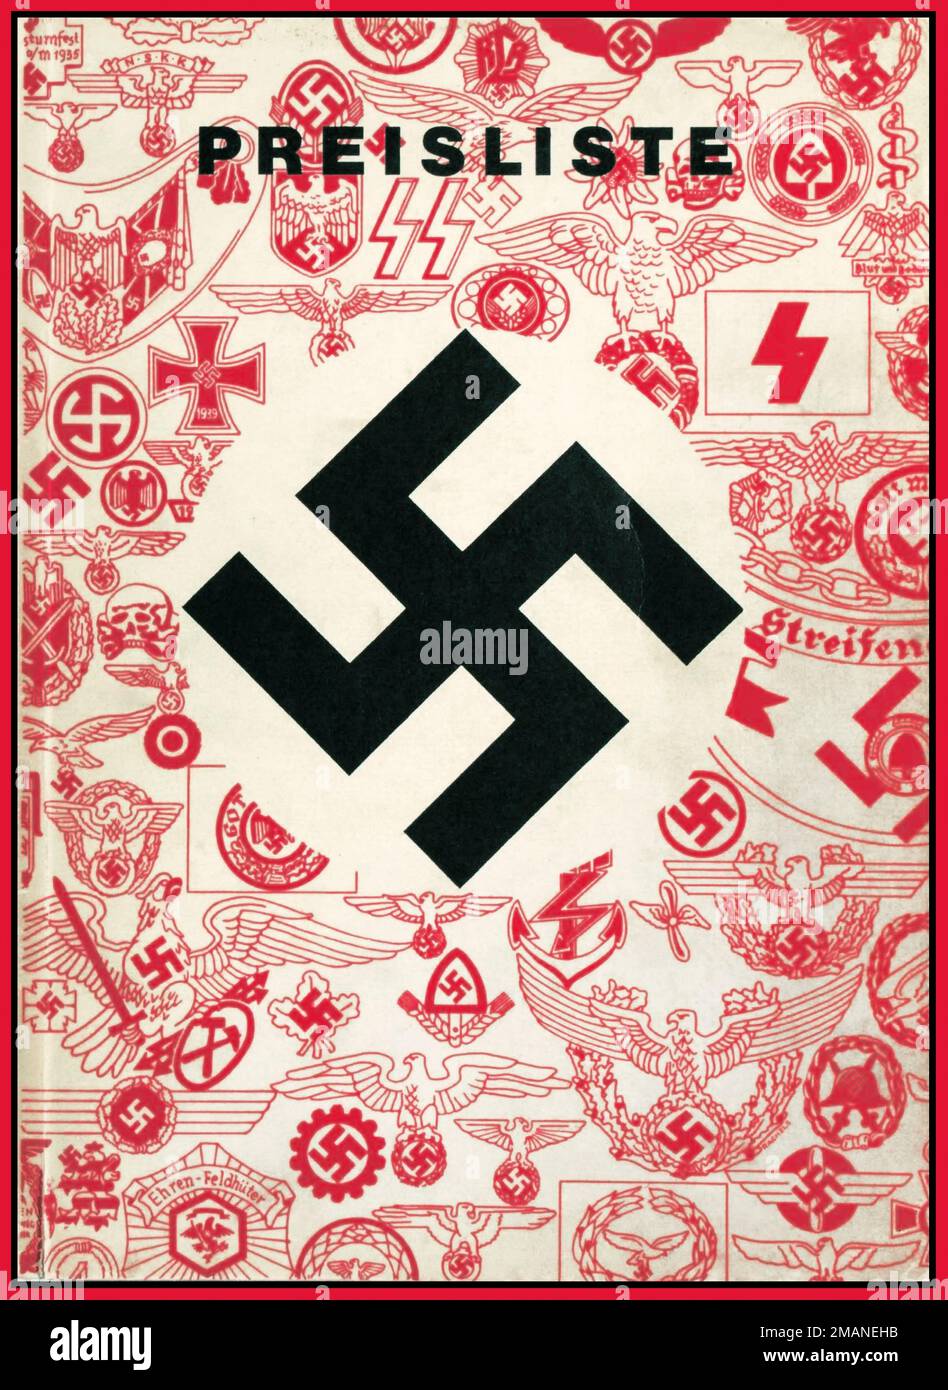 Pagina di copertina del 1930 della Germania nazista da un catalogo ufficiale dei prodotti accessori nazisti pubblicato in Germania nazista negli anni '1930s da F.W. Assmann & Söhne, un produttore di accessori in metallo per insegne e uniformi a Lüdenscheid, Germania. La società produceva Uniformknöpfe, Orden, Abzeichen, Beschläge, Koppelschlösser und Schnallen, i. e. bottoni uniformi, ordini/decorazioni, insegne/emblemi/badge, accessori metallici, fibbie per cinture, ecc. PREISLISTE (Listino prezzi) copertina che mostra una svastika nazista circondata da immagini di pezzi realizzati dall'azienda Foto Stock